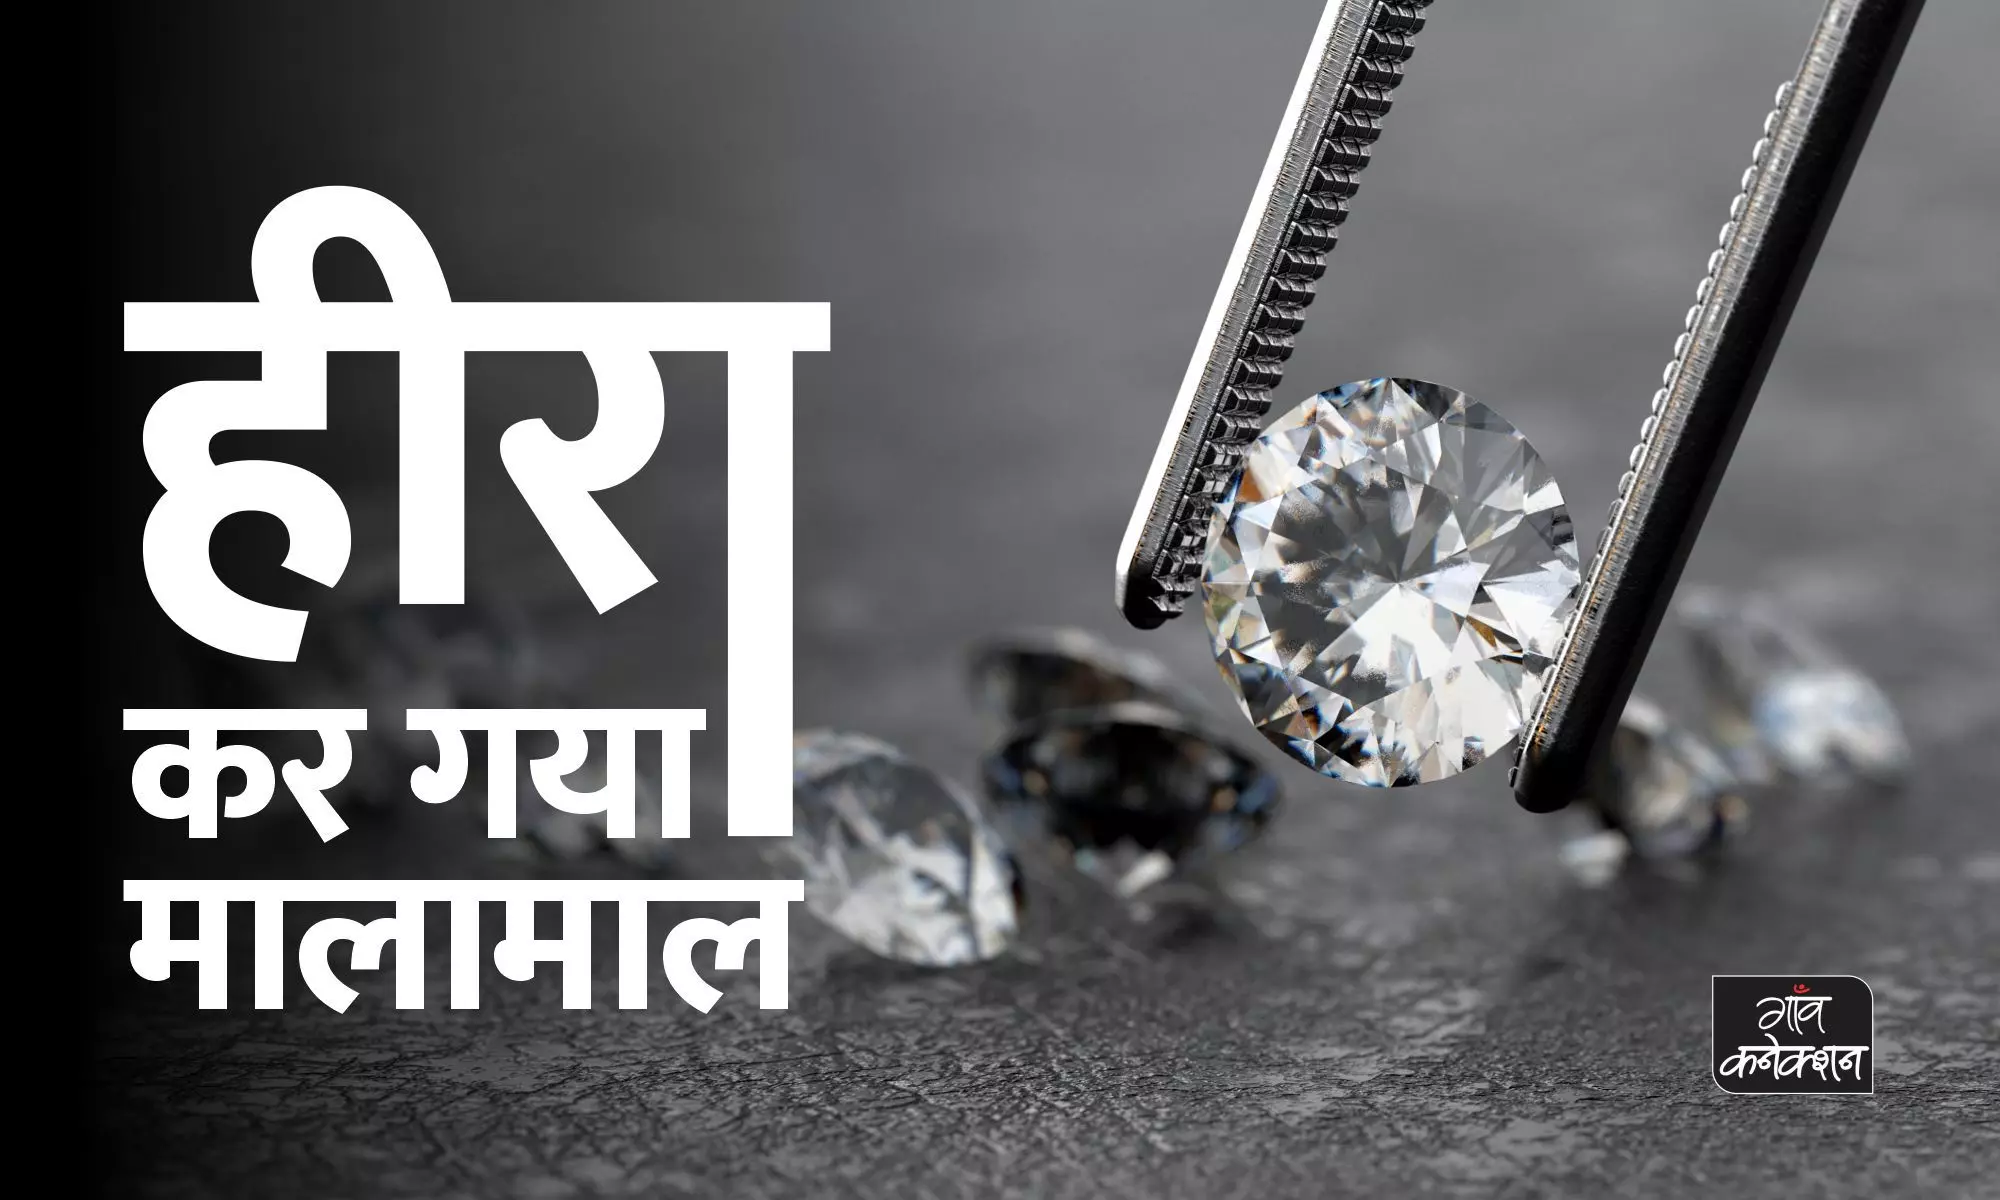 मध्य प्रदेश: एक करोड़ 62 लाख में बिका नायाब हीरा, रातों-रात मालामाल हुए शख्स की है ये कहानी